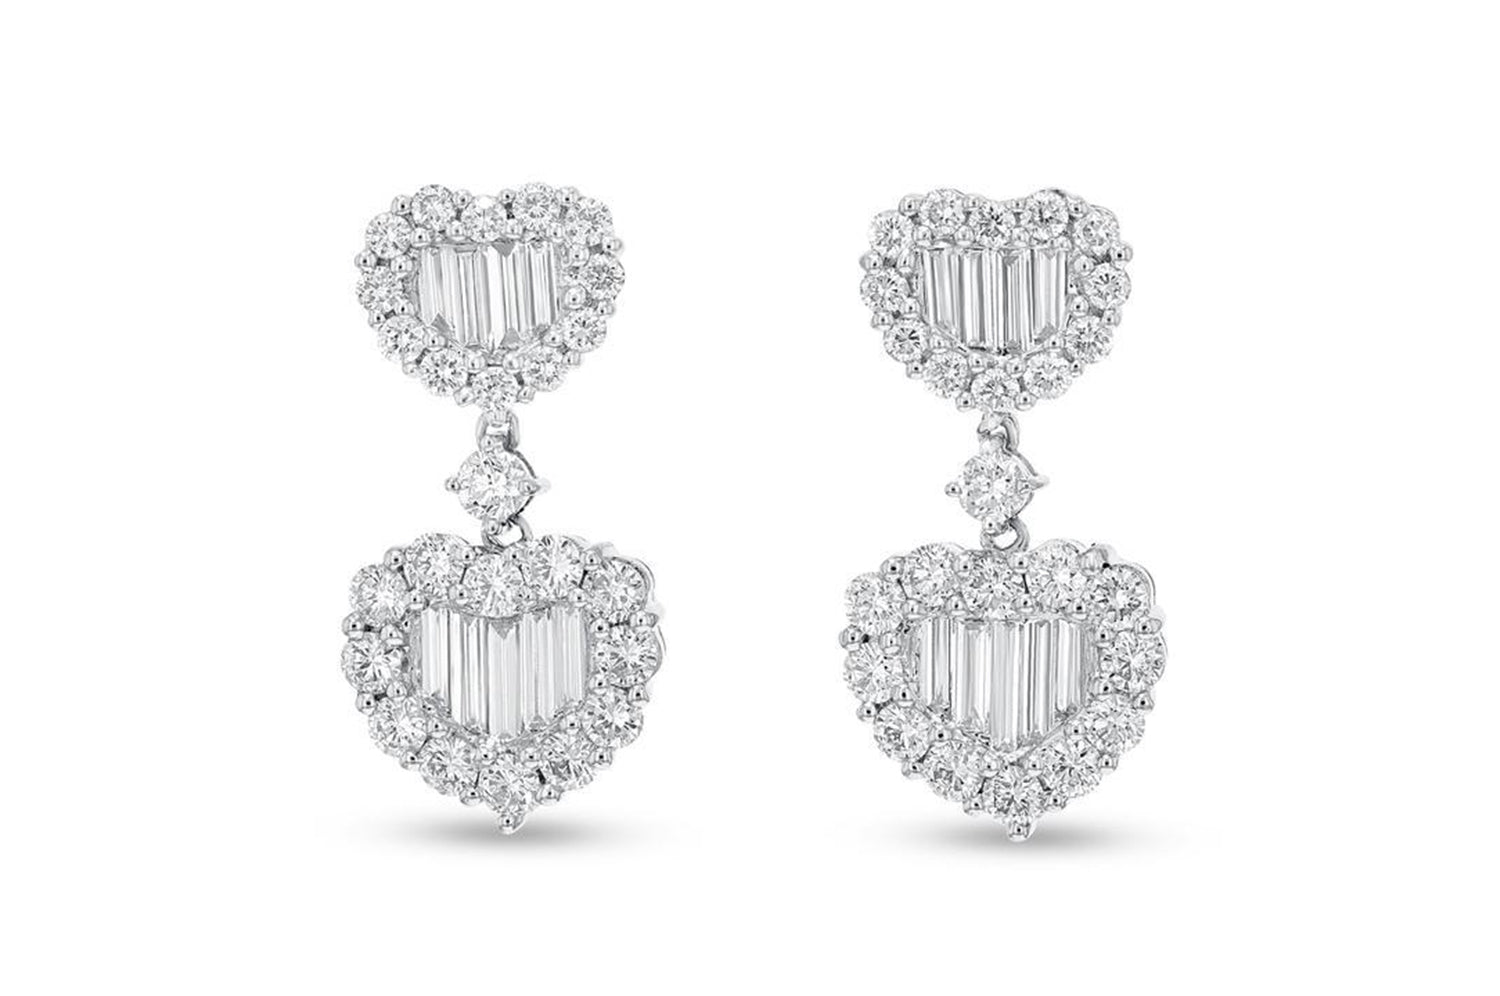 'Hearts Among Us' 18K White Gold Diamond Earrings, 2.77 Carats